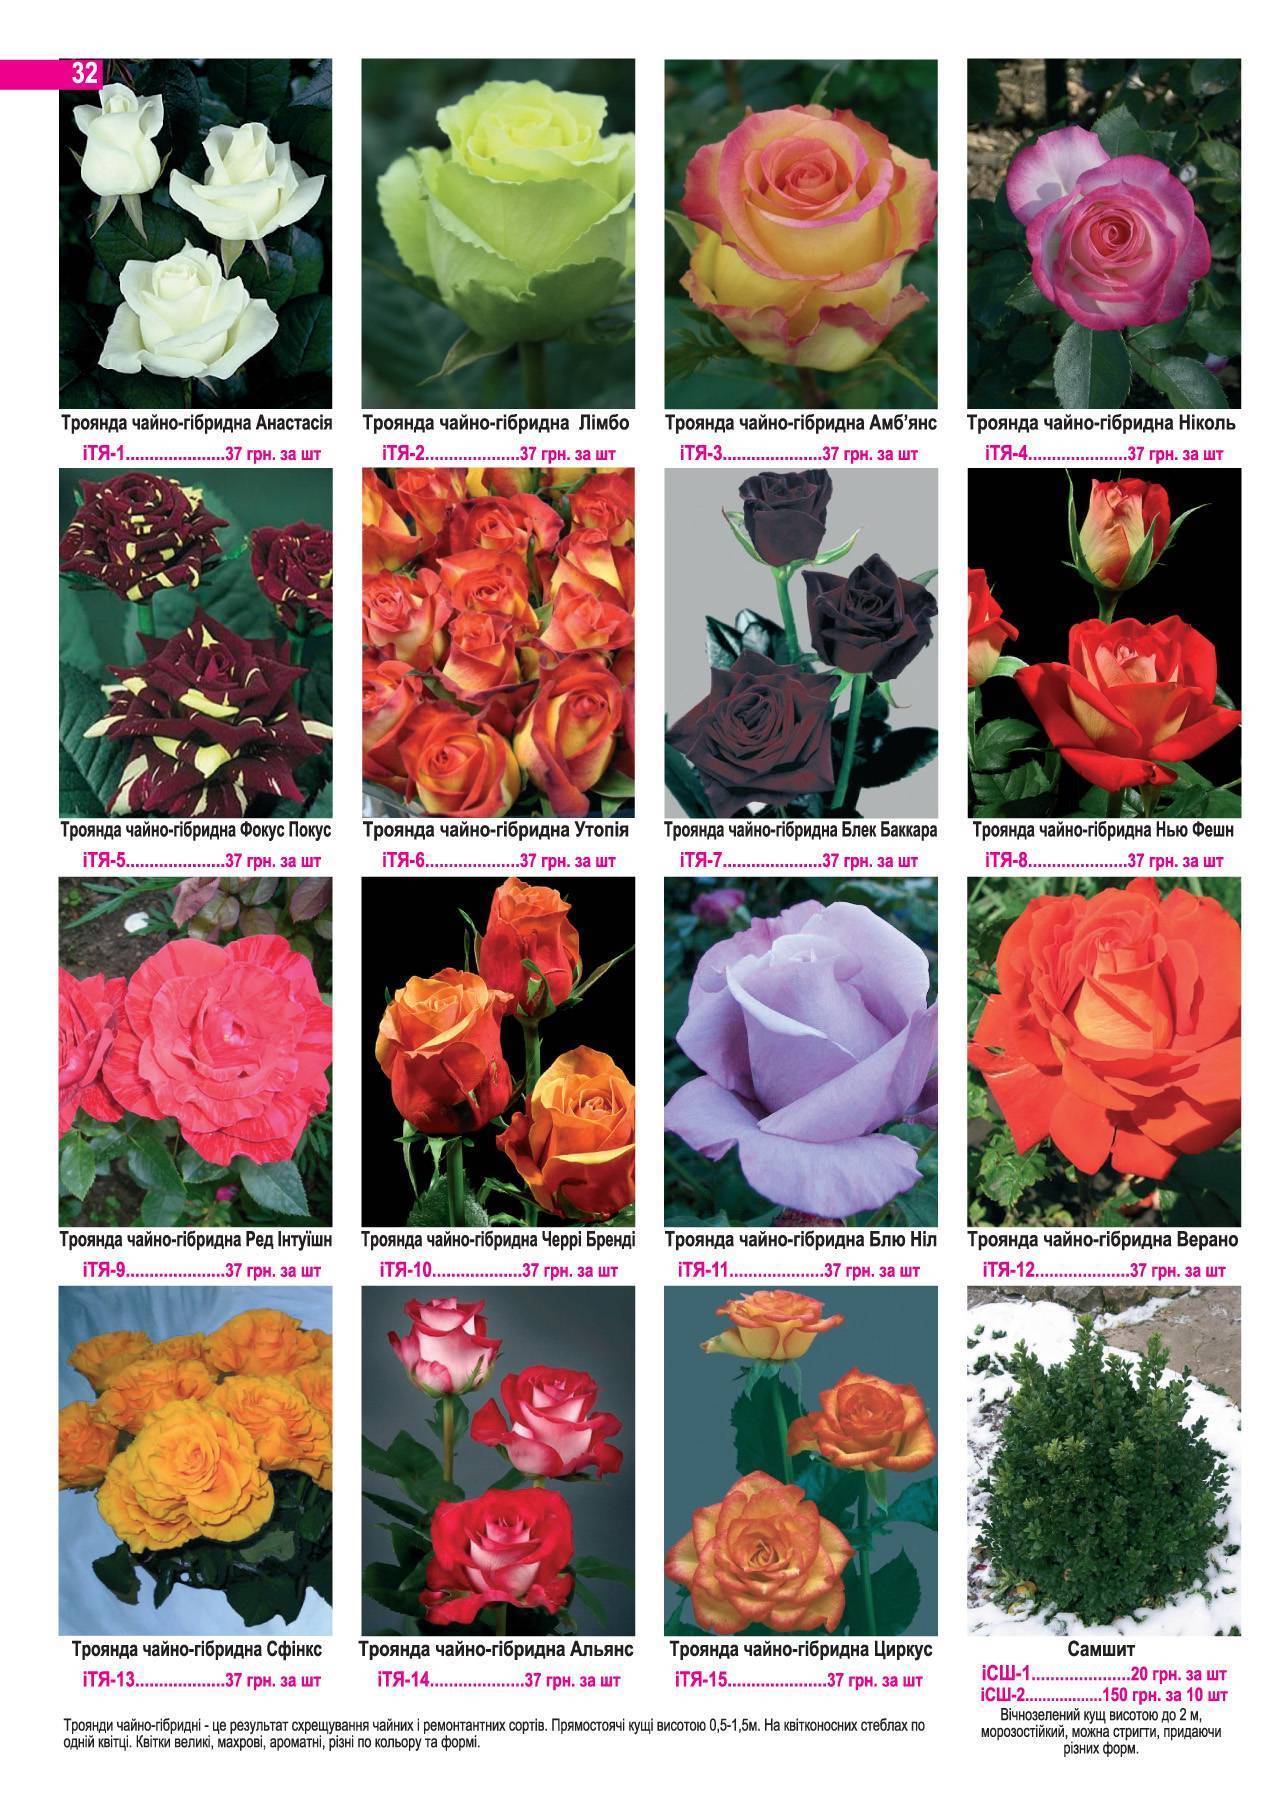 Фокус покус - описание сорта розы, плюсы и минусы, правила ухода | розоцвет